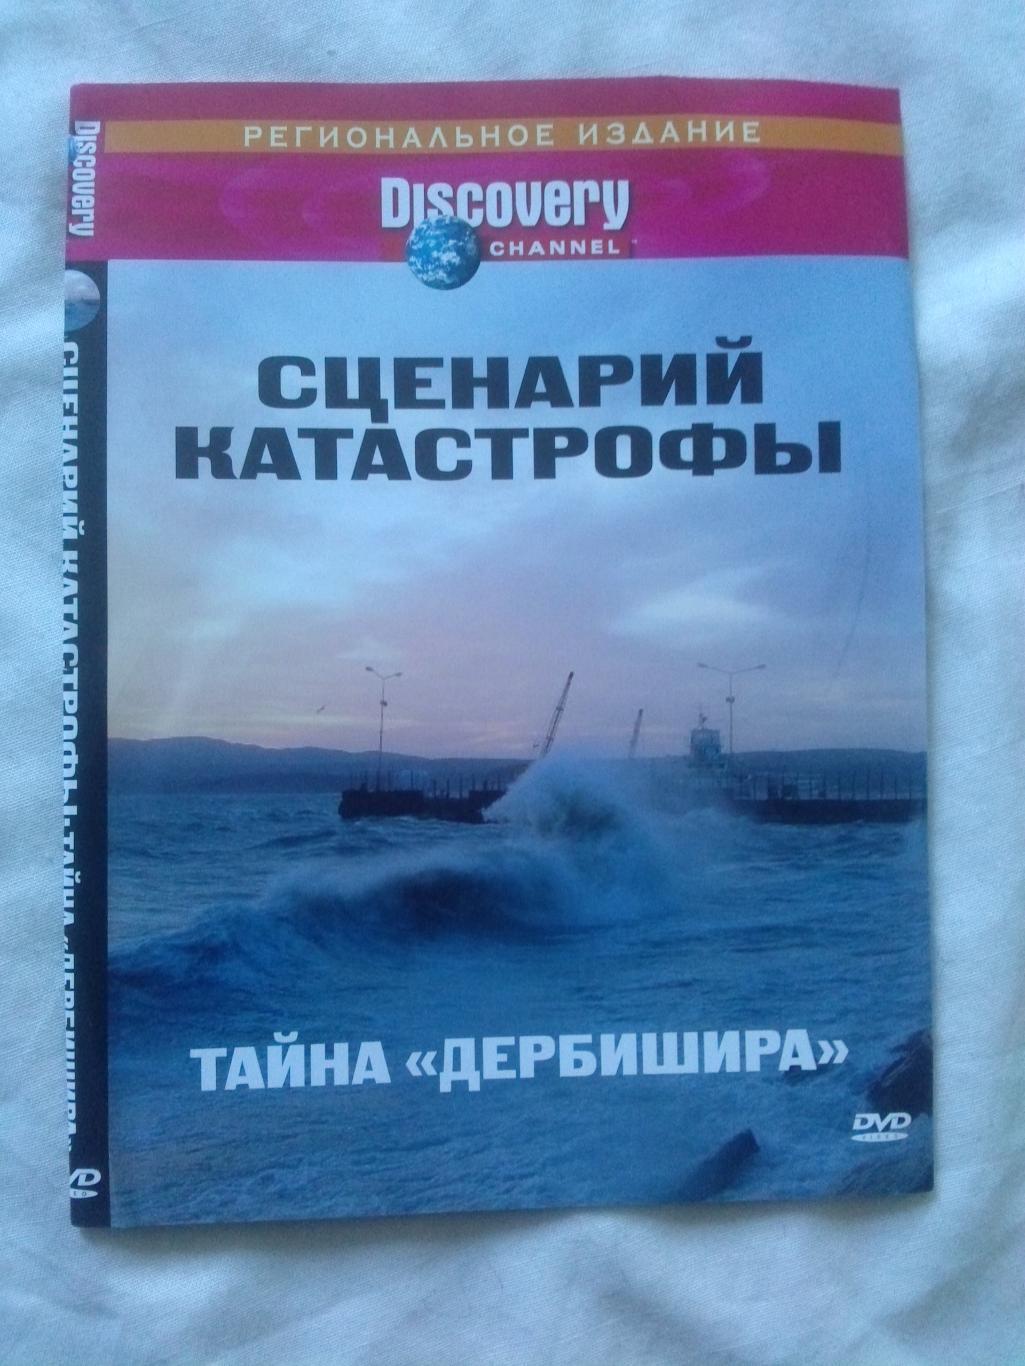 DVD Discovery лицензия документальное кино Сценарий катастрофы Тайна Дербишира